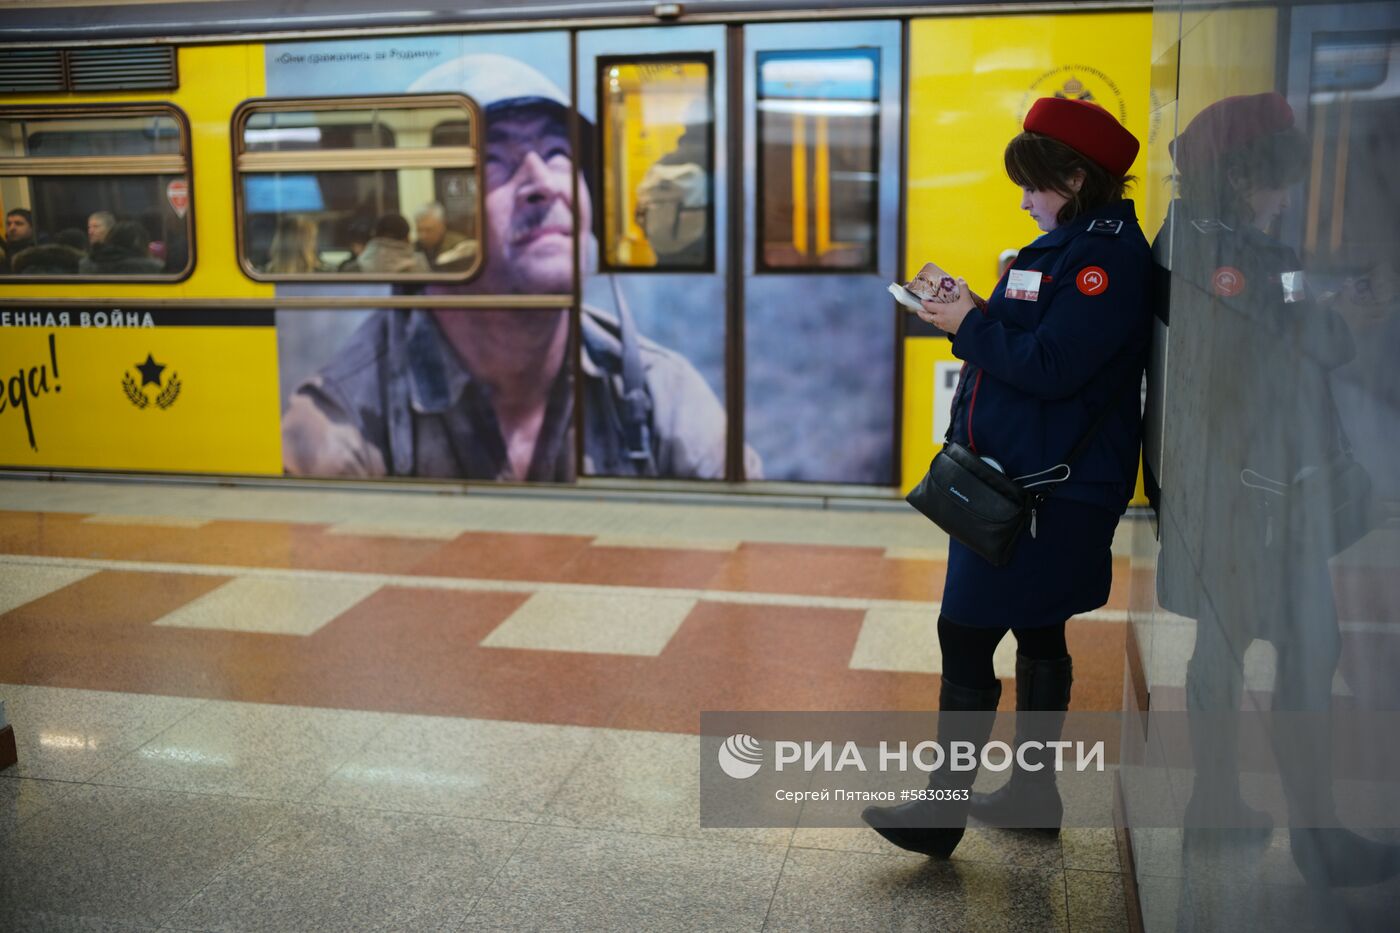 Московский метрополитен